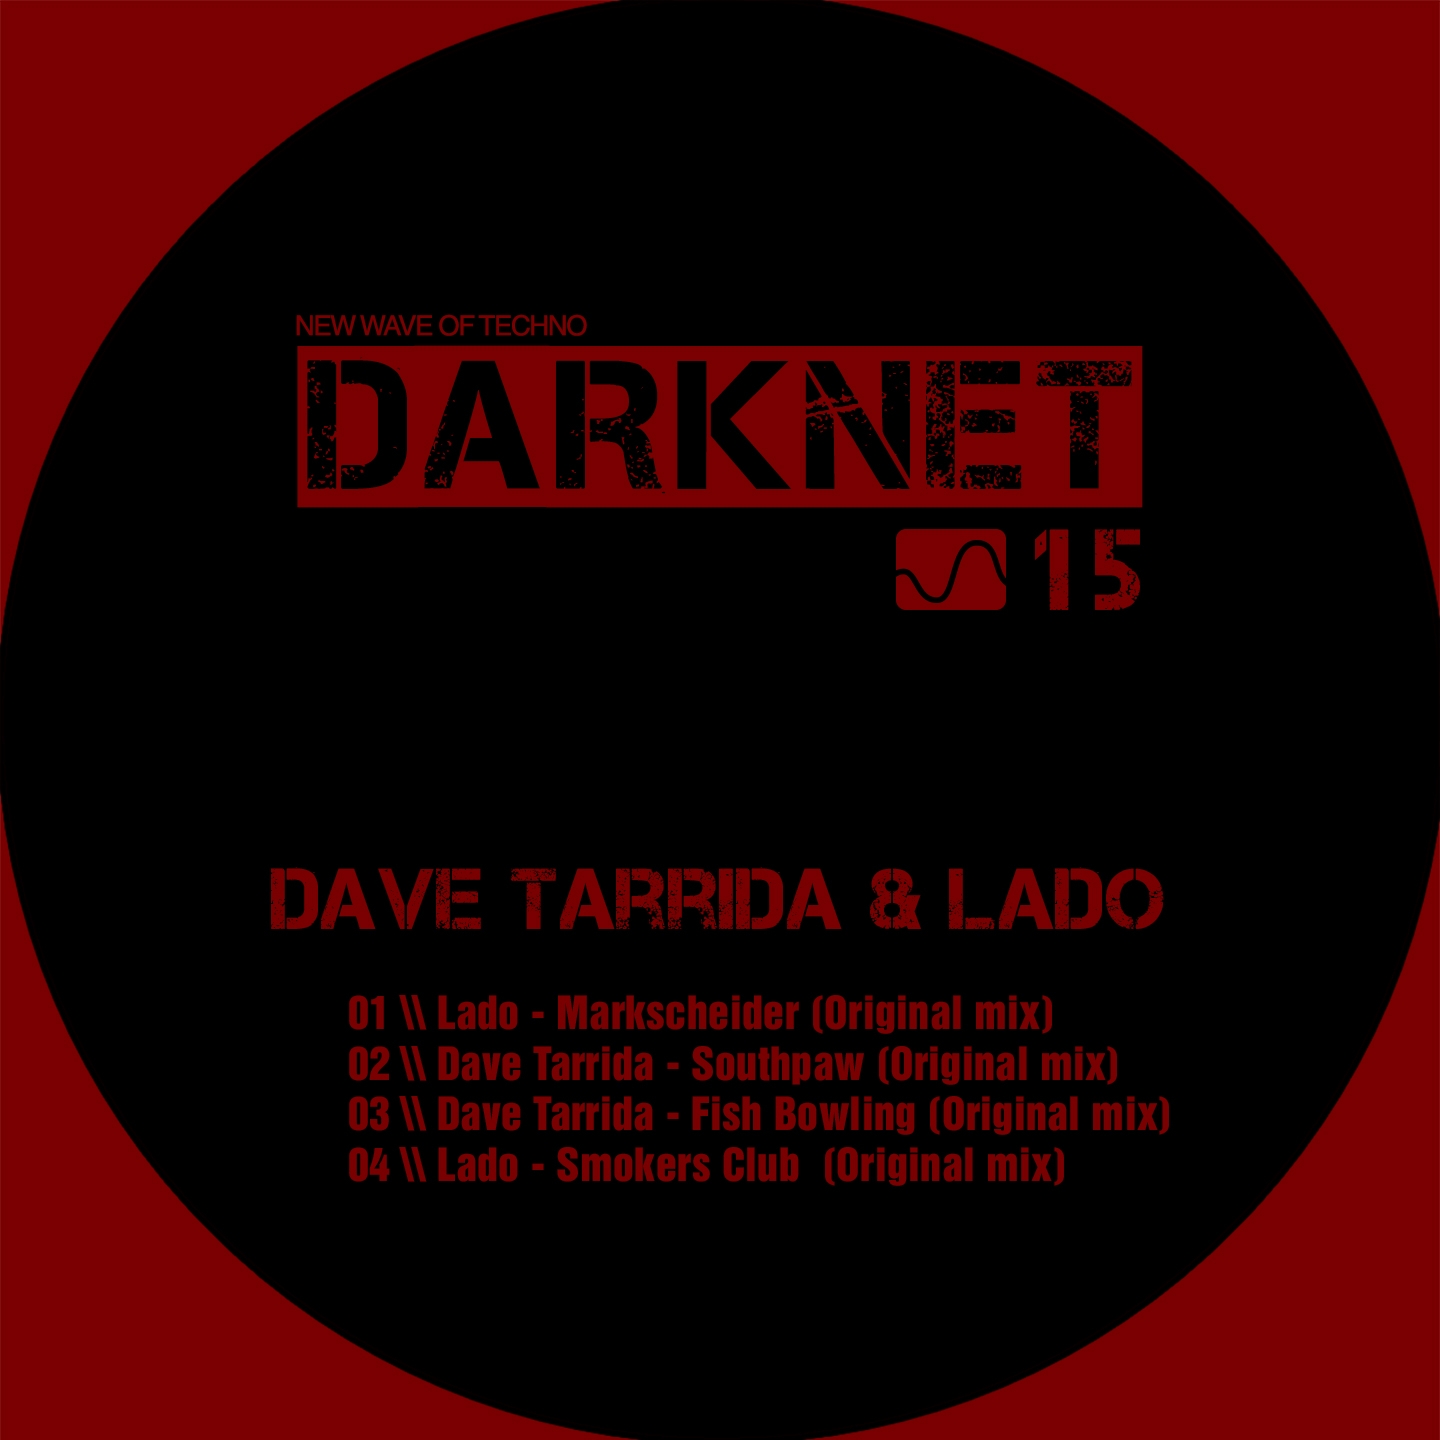 Darknet 15